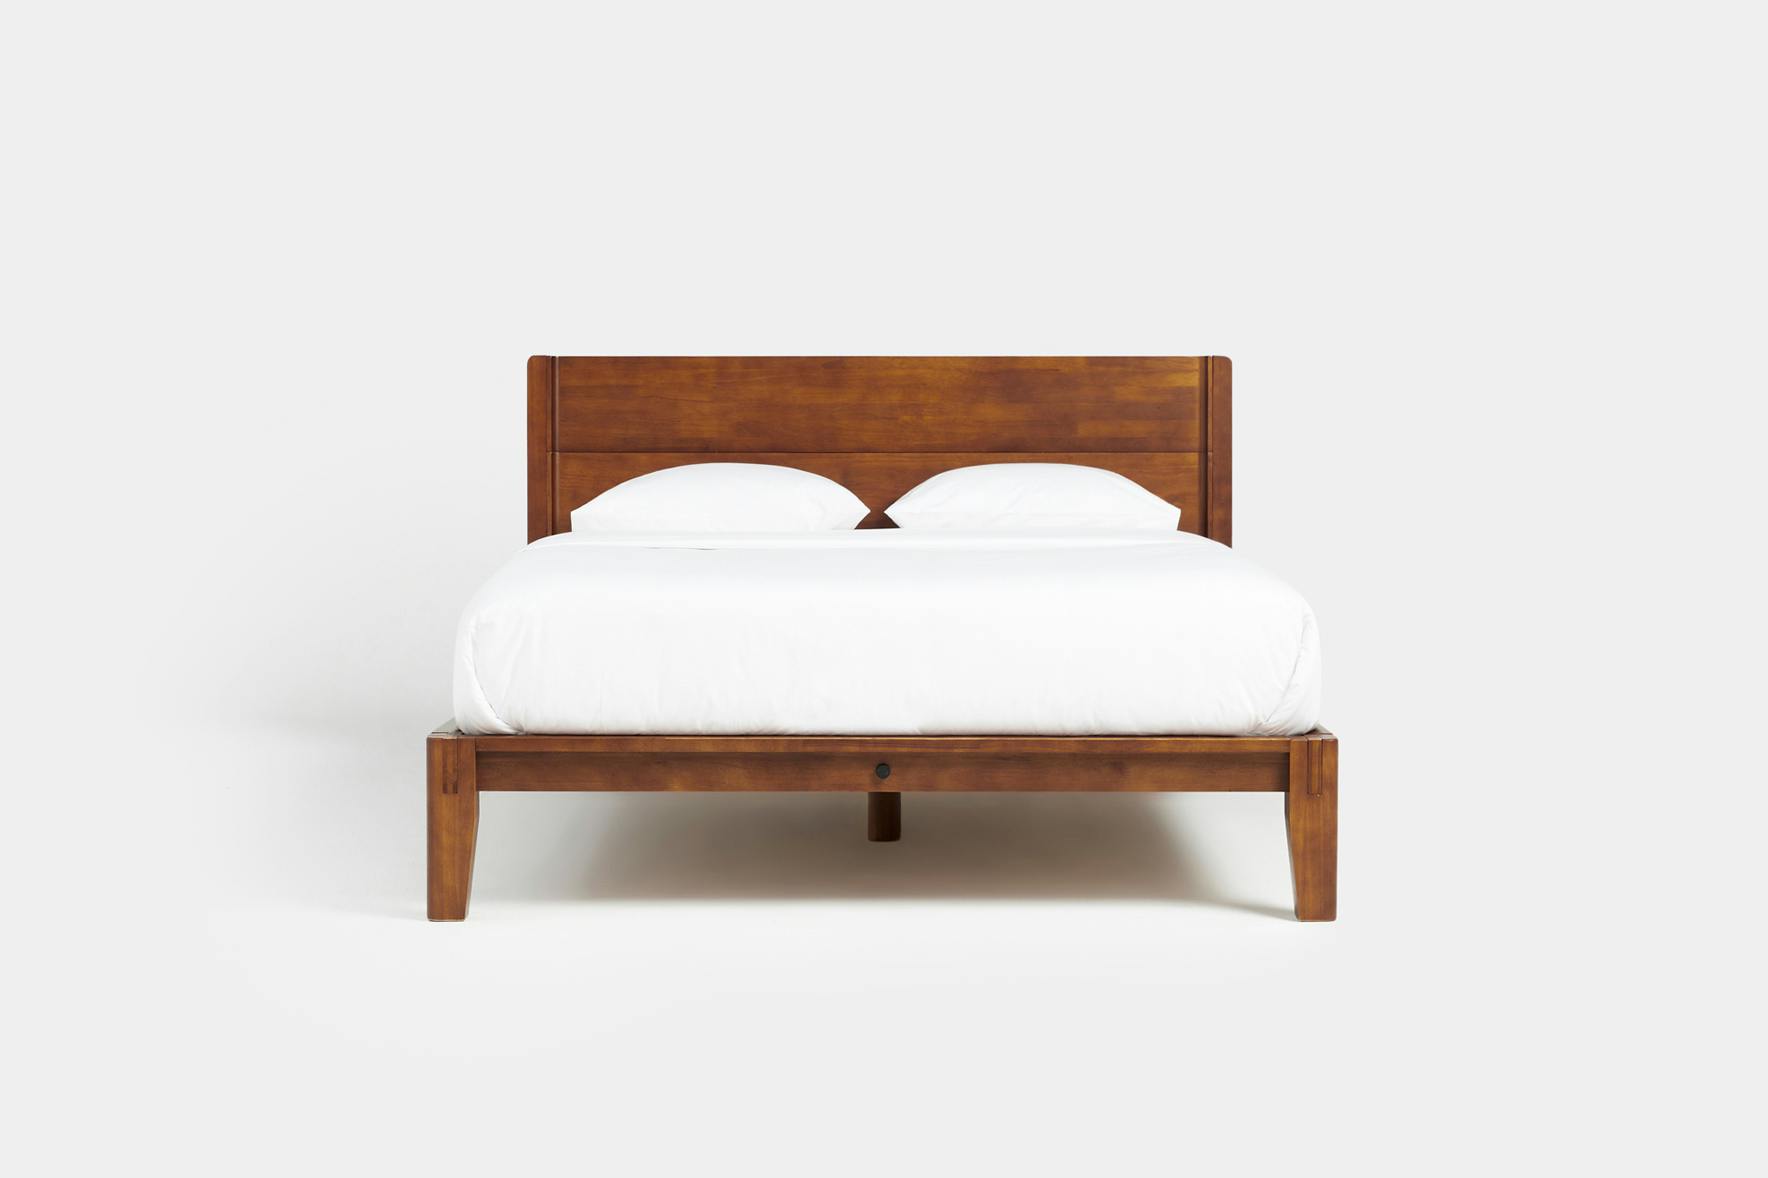 The Bed + Headboard, in Walnut